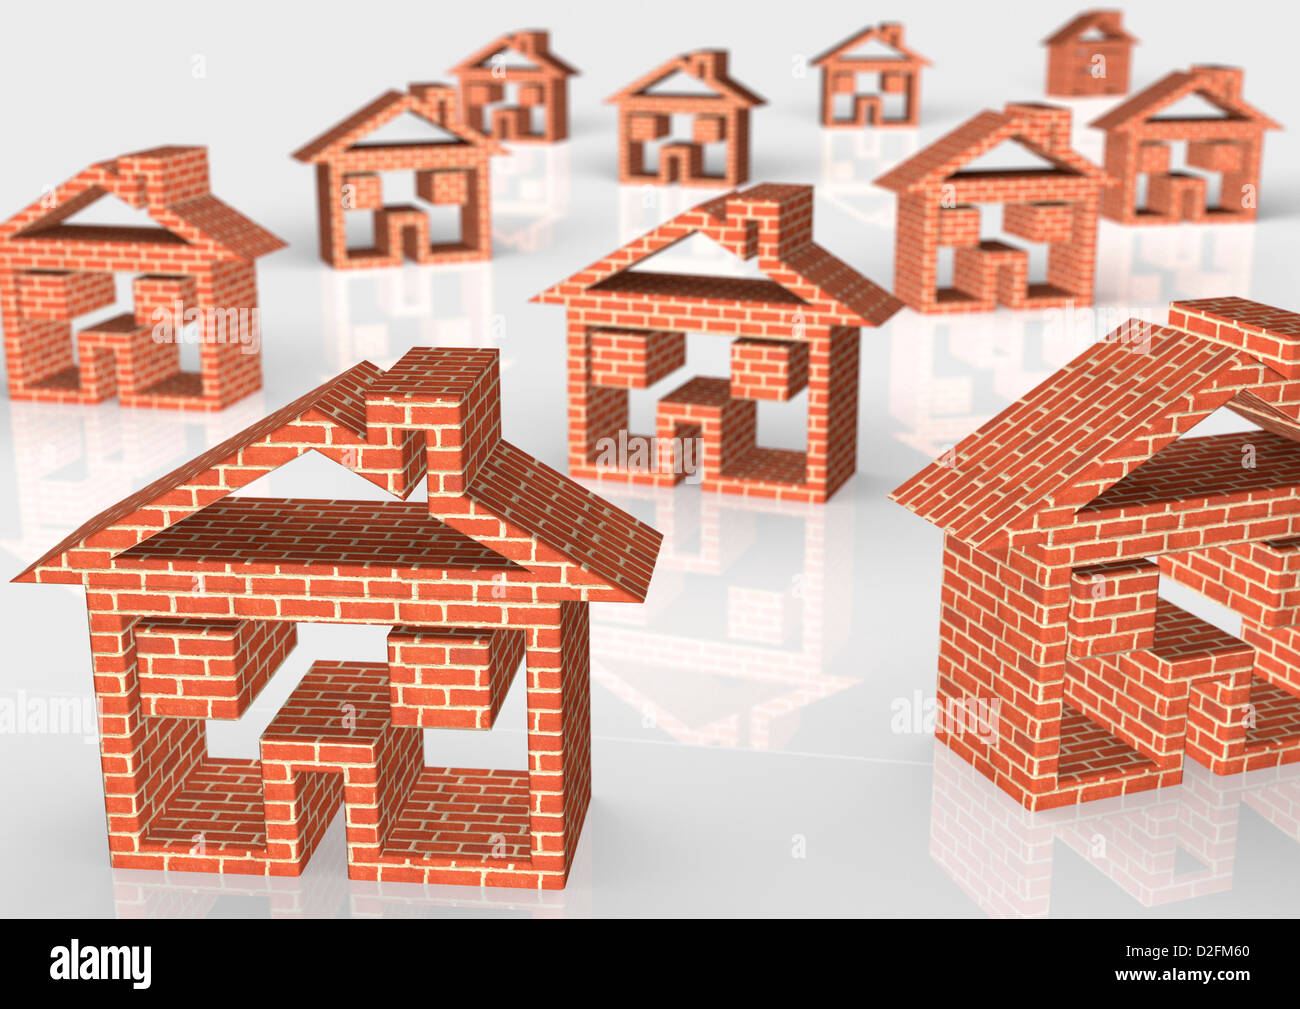 Brick house symbols on white background - housing market / construction concept Stock Photo